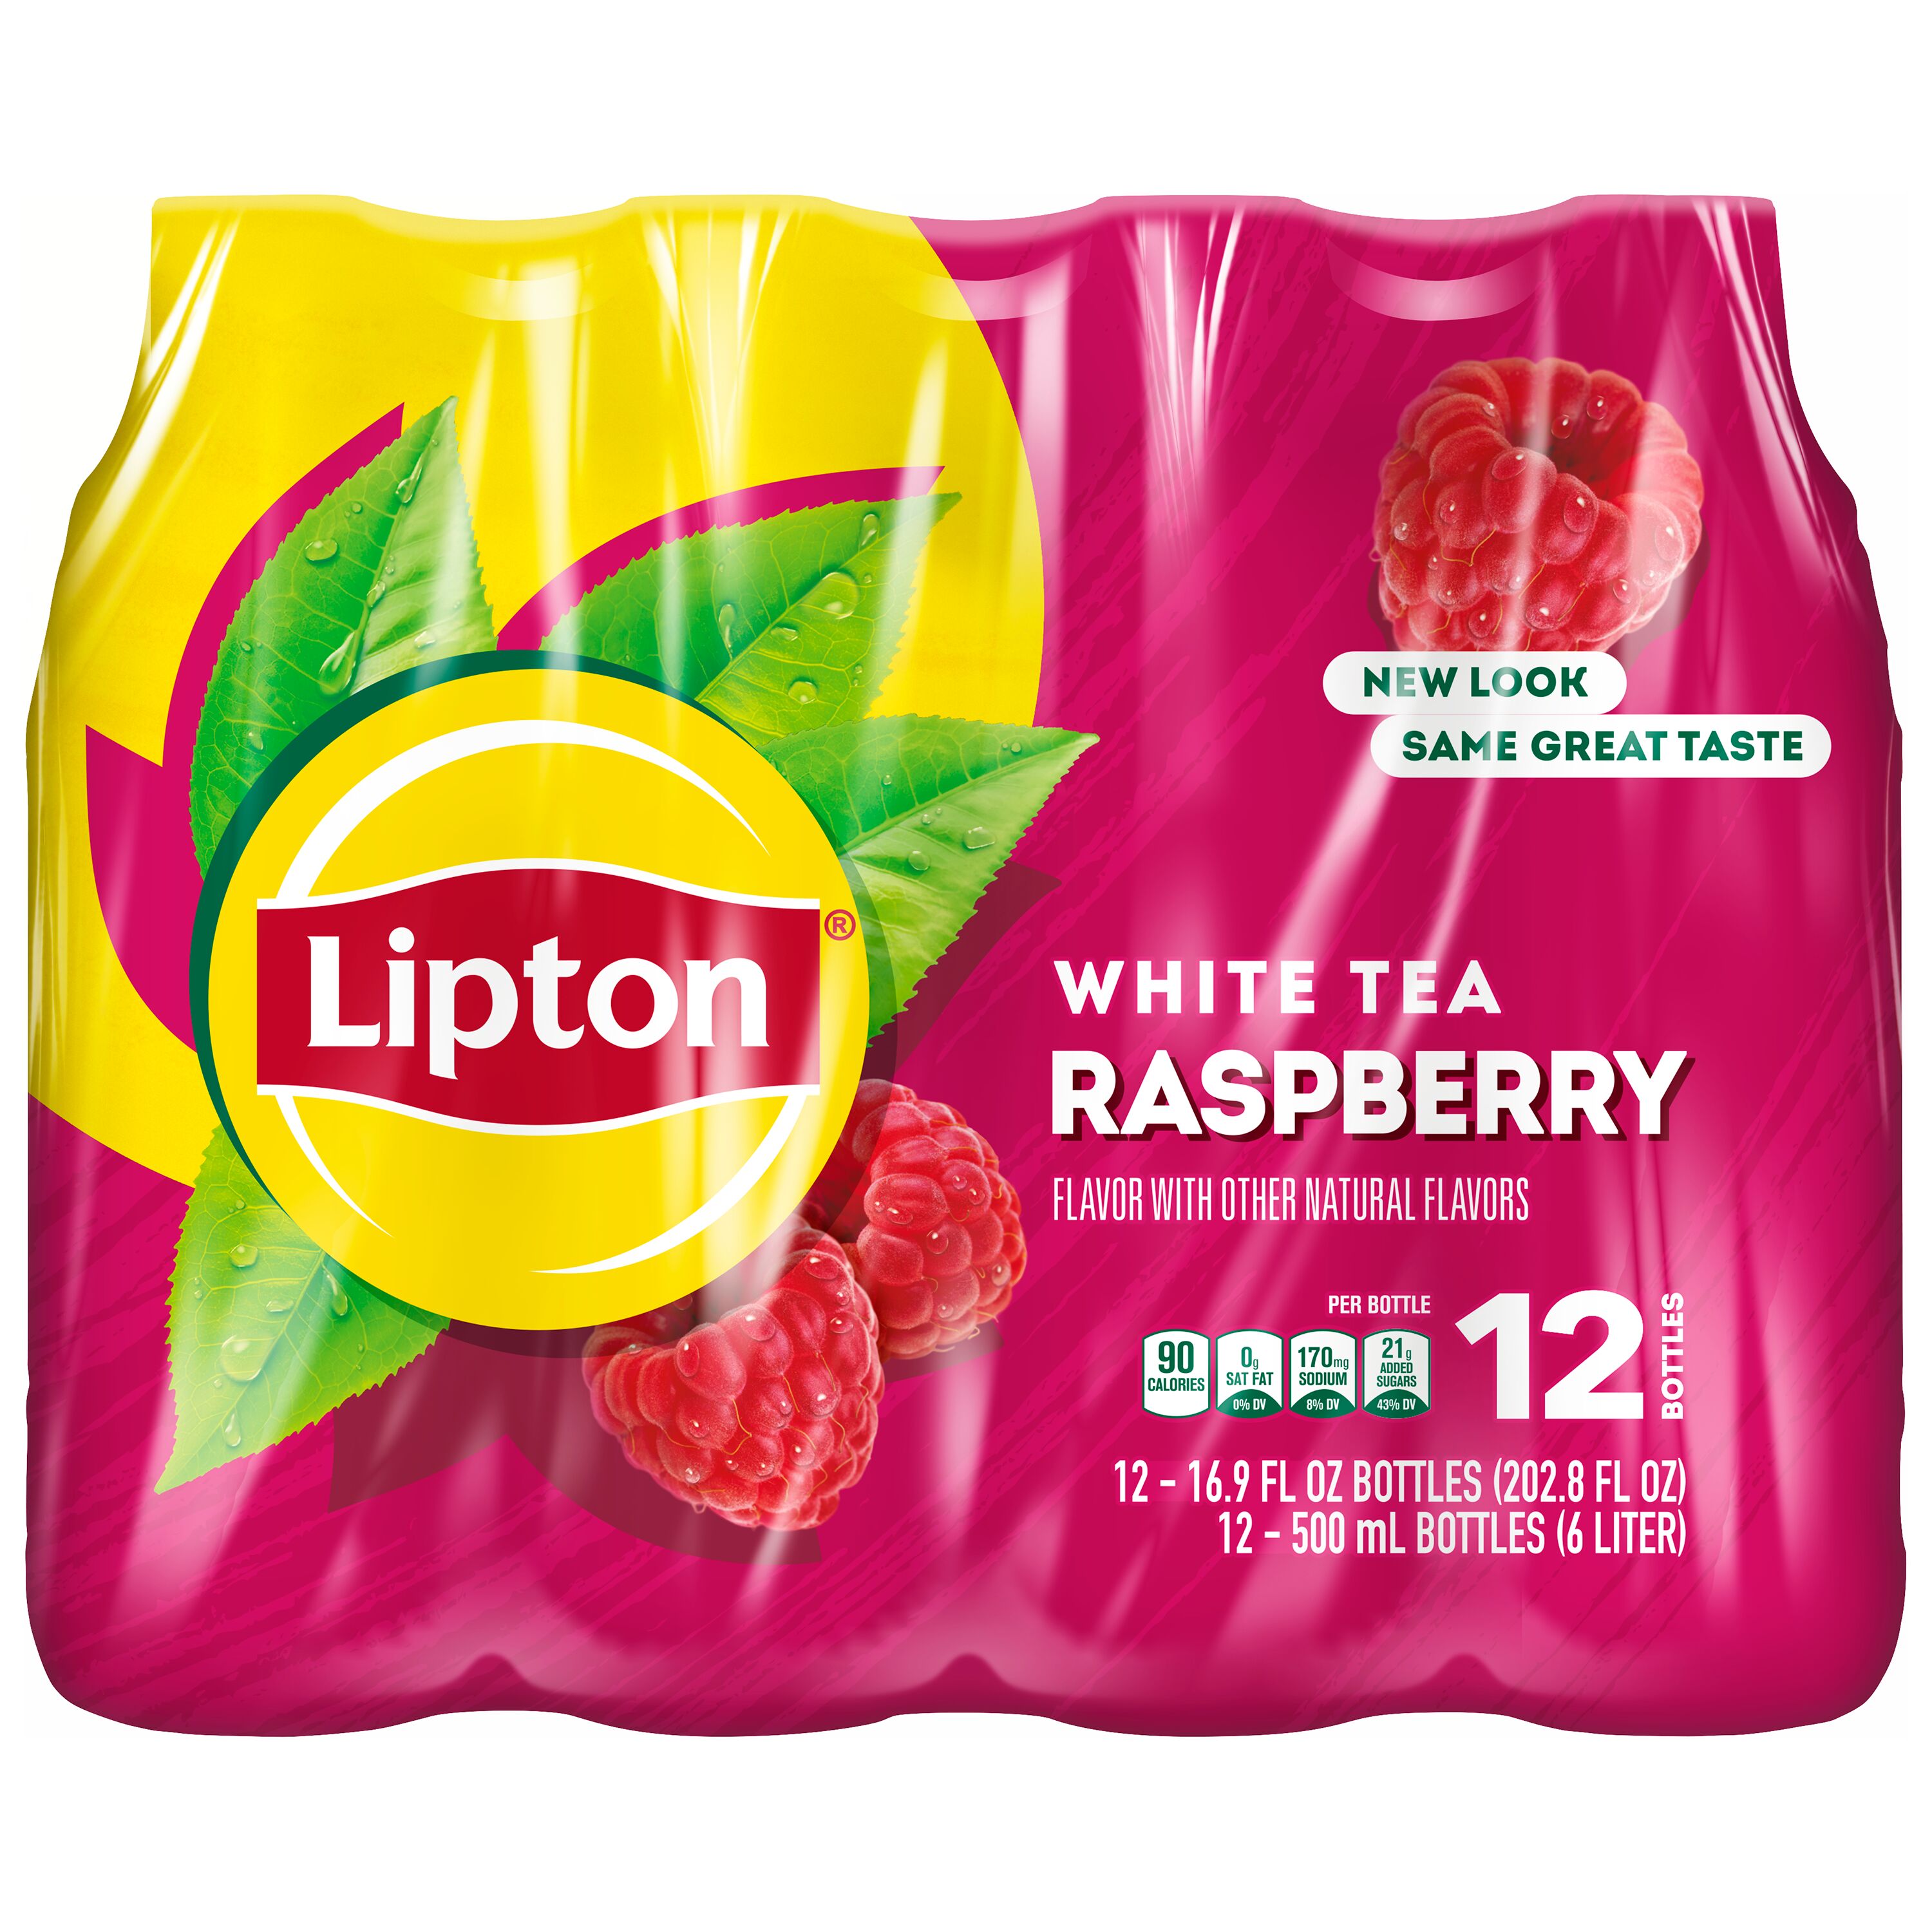 Lipton Raspberry White Tea Iced Tea, Bottled Tea Drink, 16.9 fl oz, 12 Pack Bottles - image 2 of 6